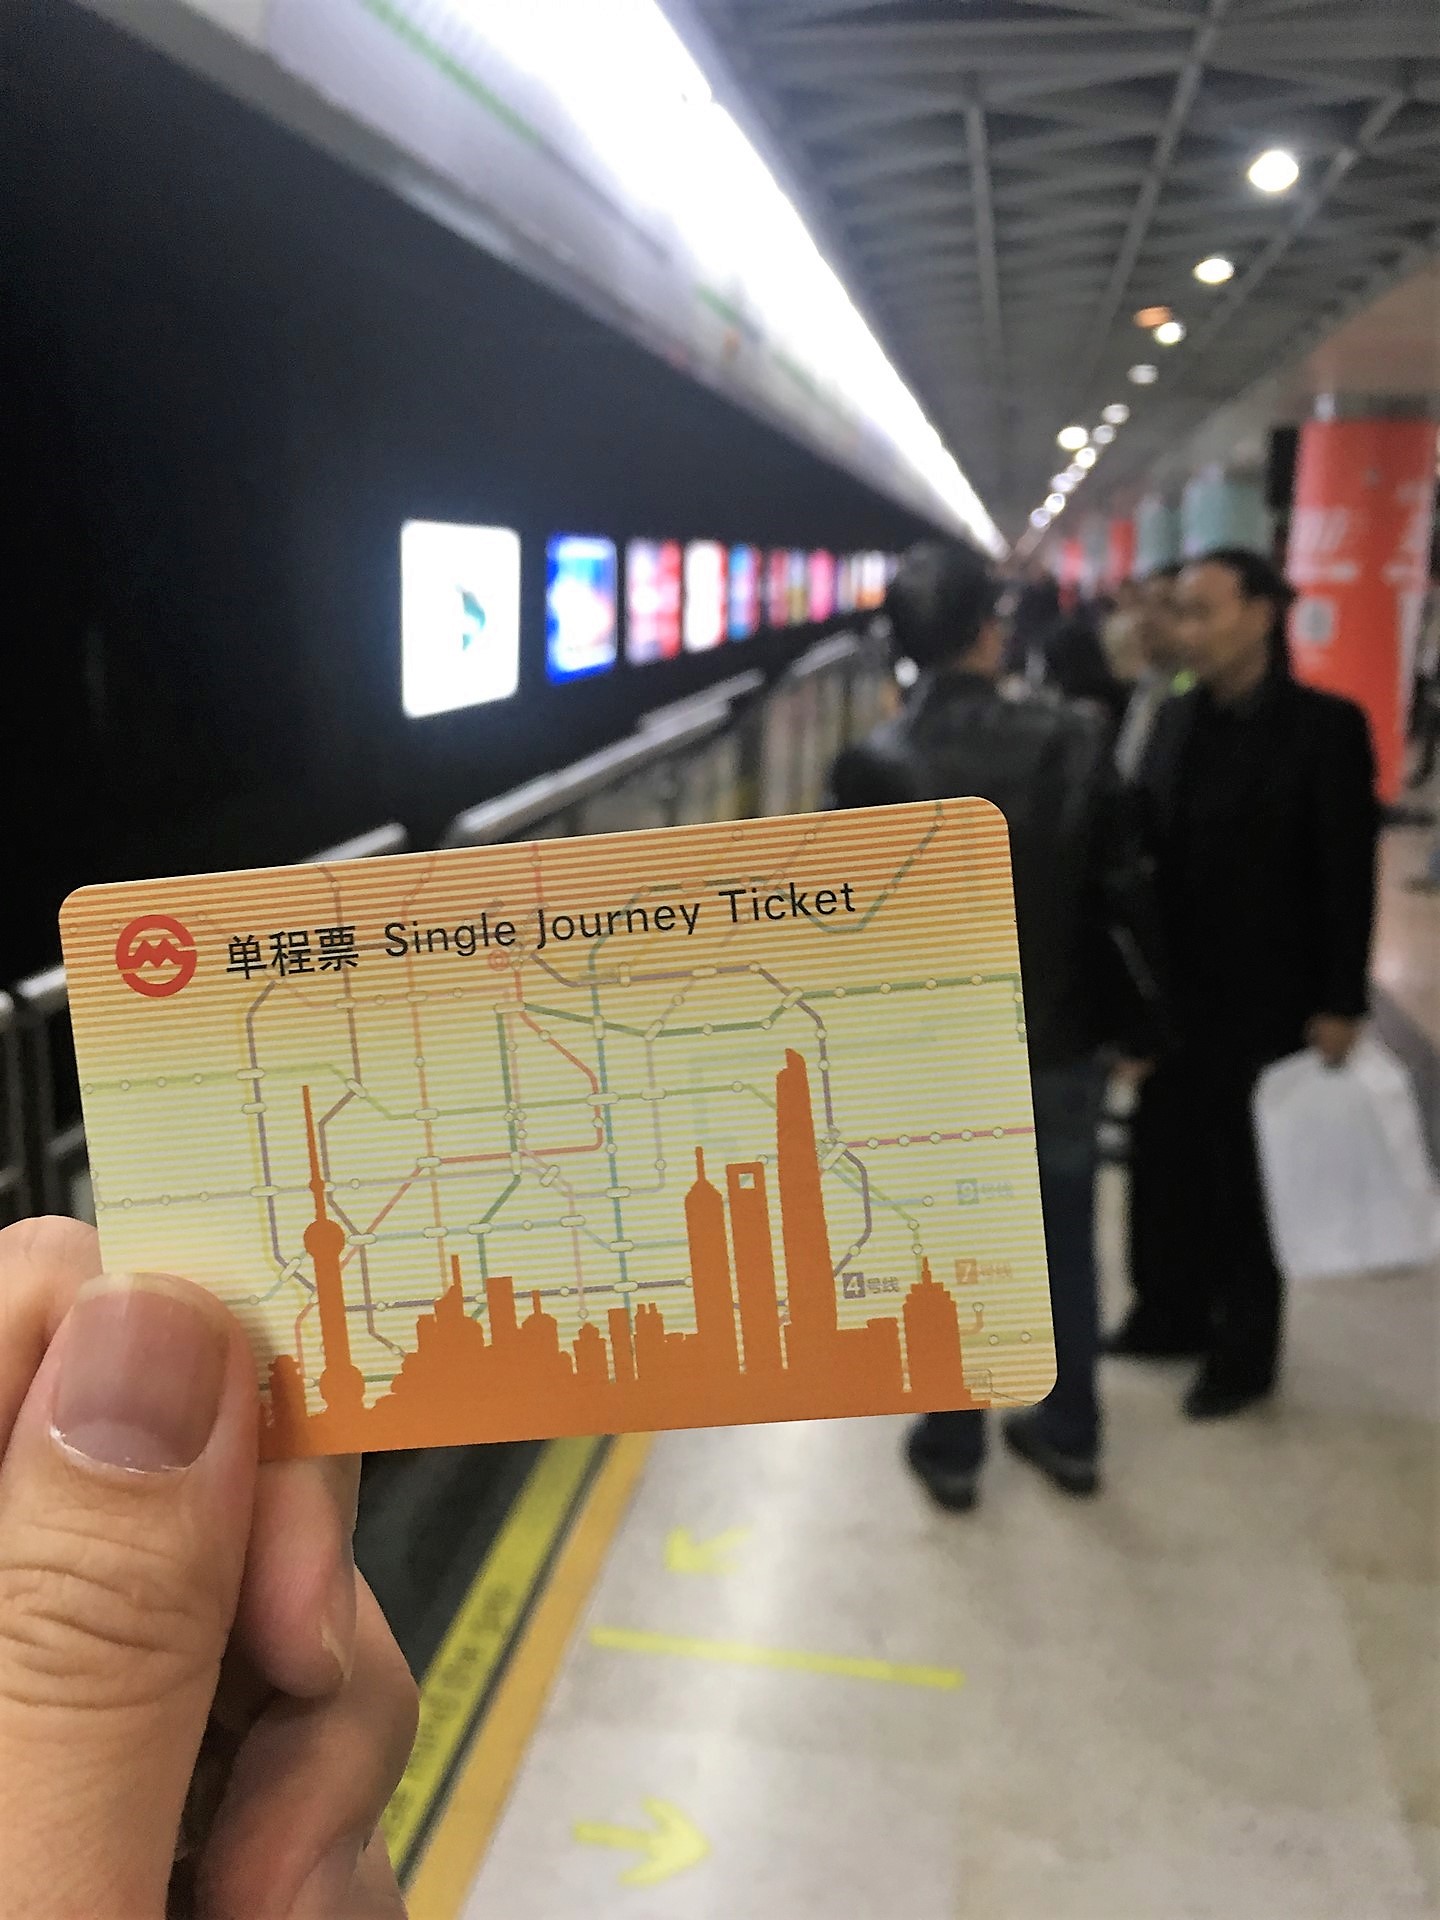 上海の地下鉄の切符